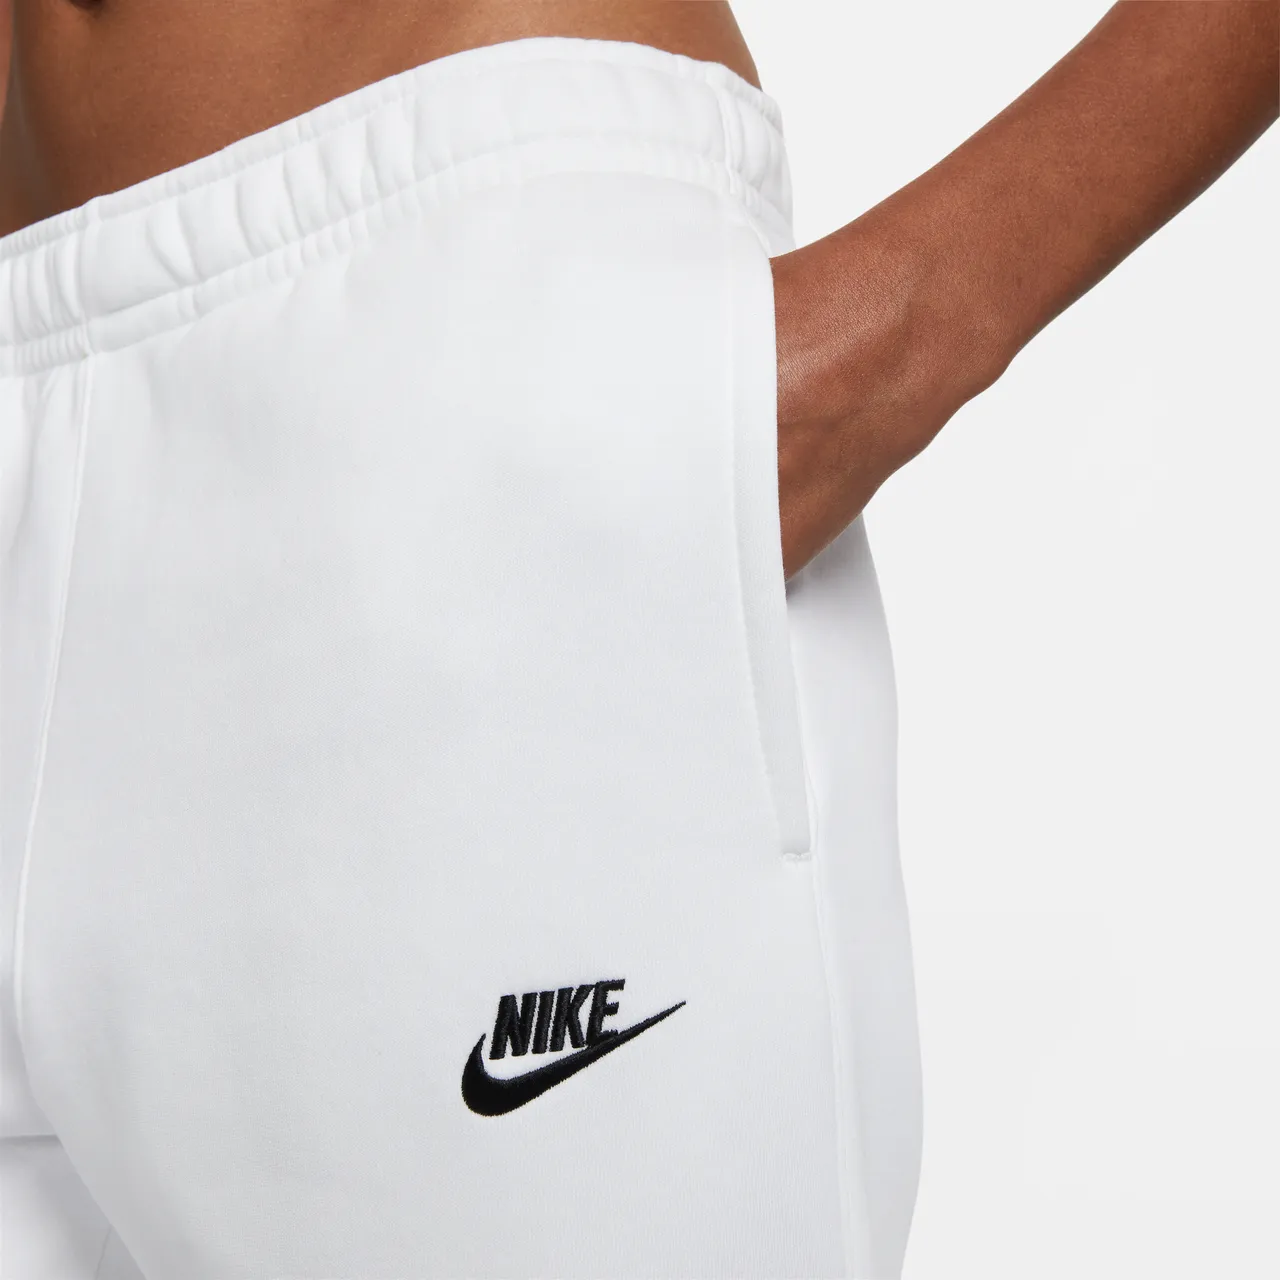 Nike Sportswear Club Fleece Jogginghose - Weiß